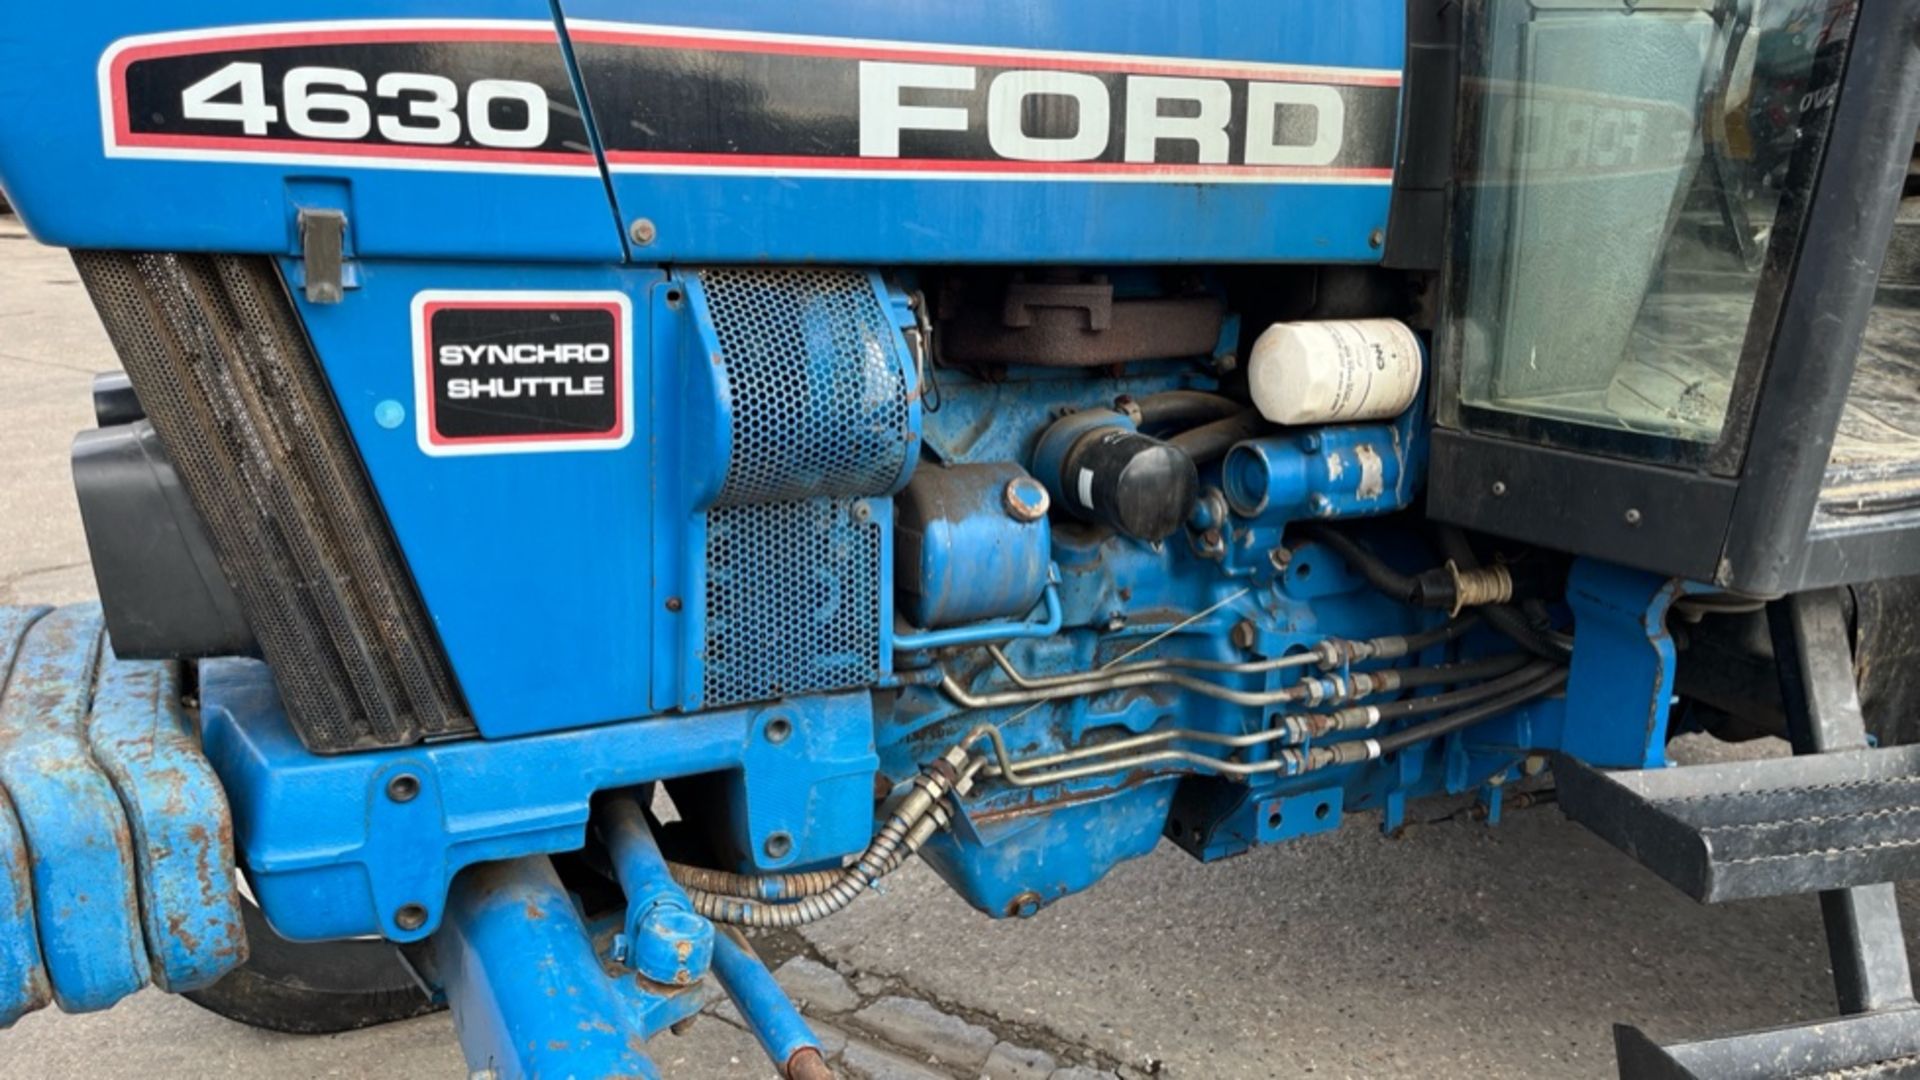 FORD 4630 SYNCHRO SHUTTLE Tractor 2wd Diesel (YEAR 2017) - Bild 15 aus 22